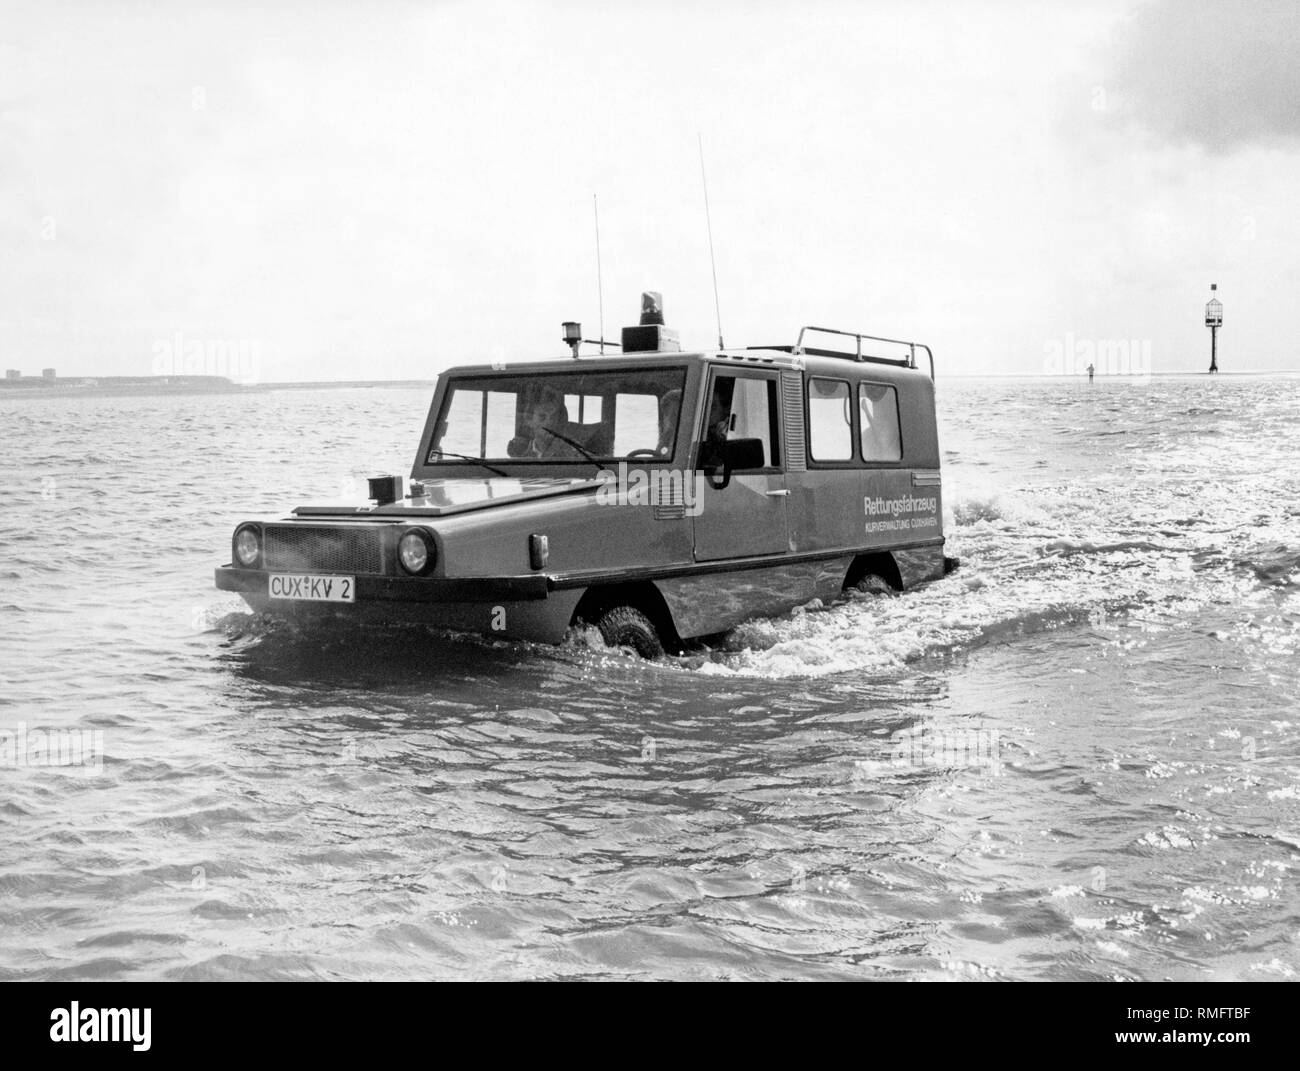 Ein Amphi Ranger auf der Nordsee bei Cuxhaven. Die Verwaltung eines Health Resort in Cuxhaven verwendet das amphibienfahrzeug Wasser Athleten in der Mühe zu retten. Die Amphi Ranger war zwischen 1985 und 1995 gebaut. Stockfoto